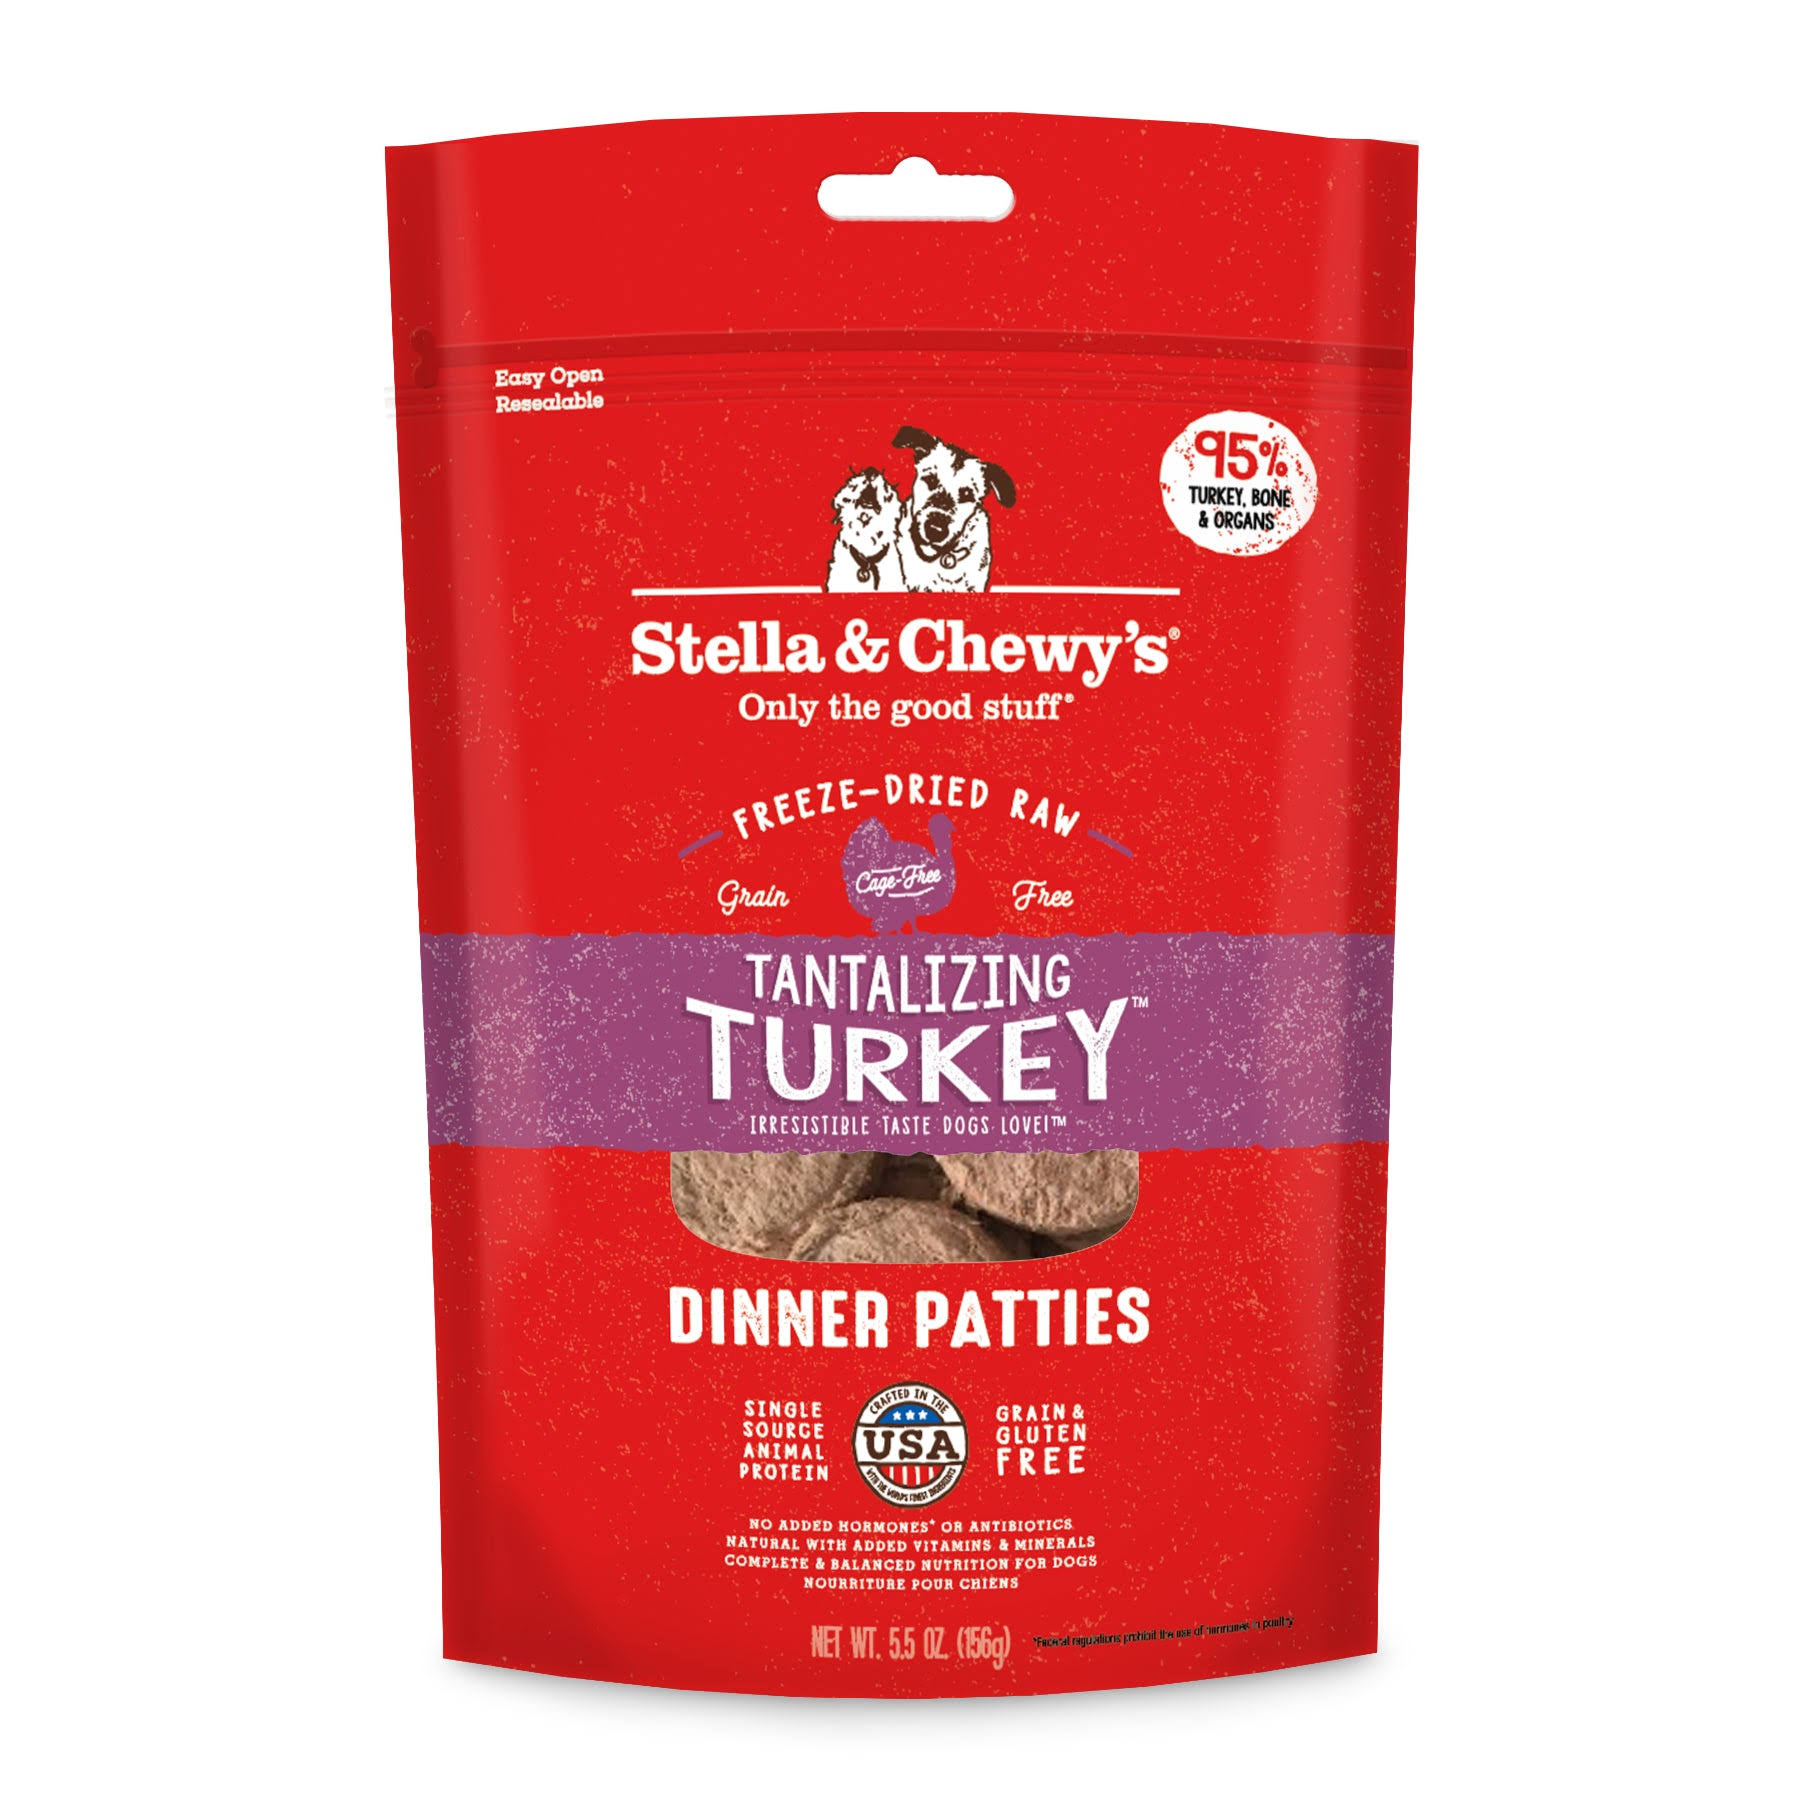 Stella & Chewy's Tantalizing Turkey Dinner Patties Freeze-Dried Raw Dog Food, 5.5 OZ